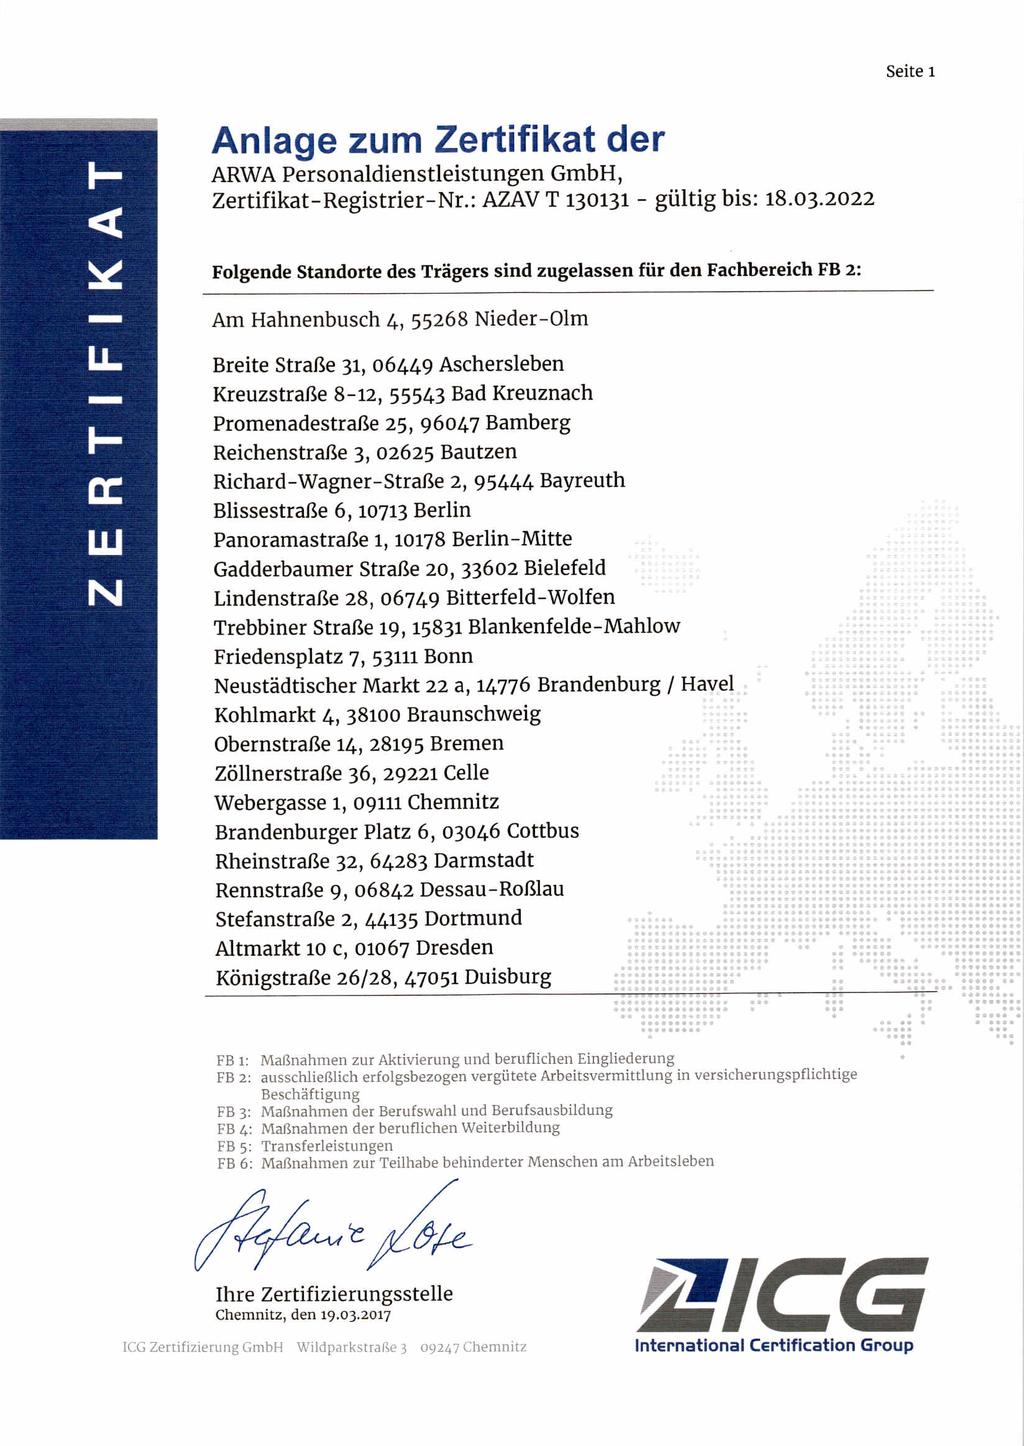 Seite 1 Anlage zum Zertifikat der ARWA Personaldienstleistungen GmbH, Zertifikat-Registrier-Nr.: AZAVT 130131 - gültig bis: 18.03.